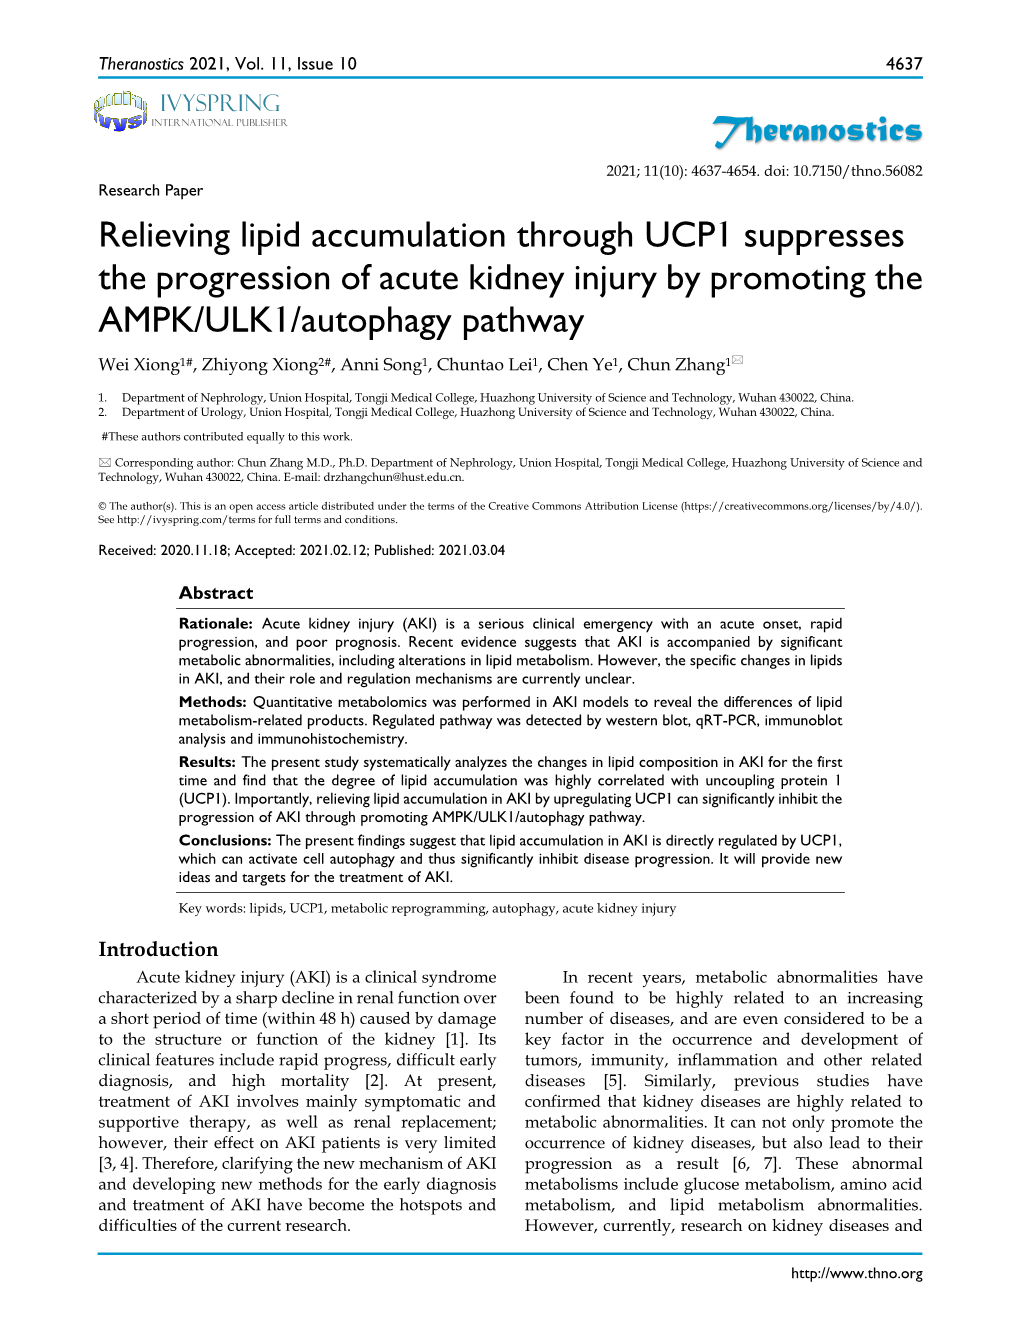 Theranostics Relieving Lipid Accumulation Through UCP1